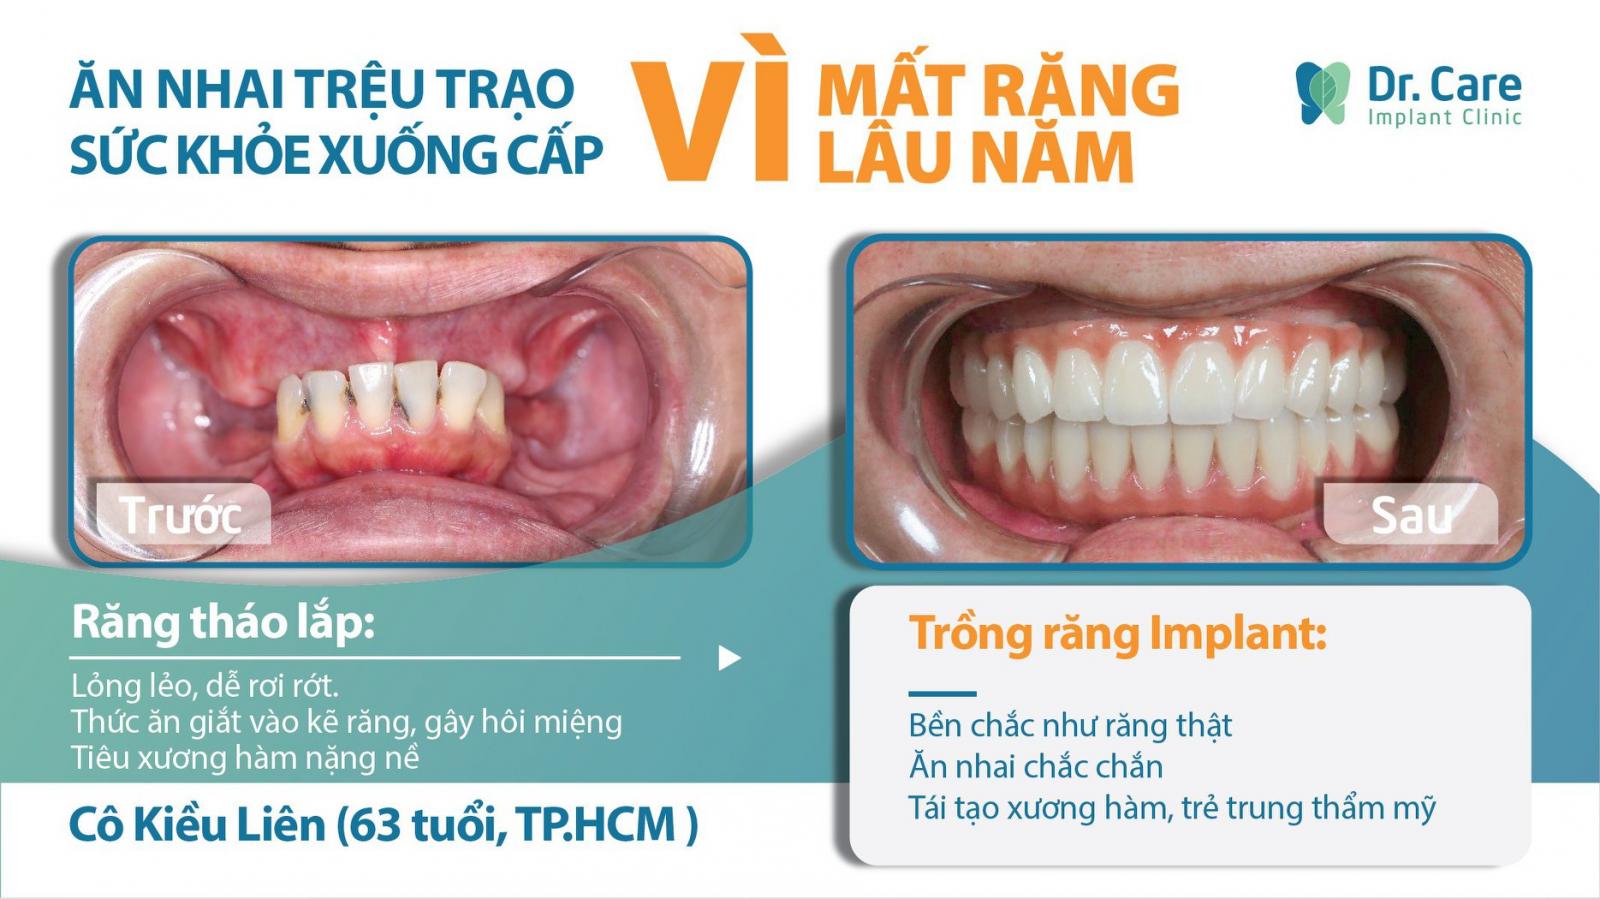 Giải pháp nào tốt nhất cho người bị mất răng?